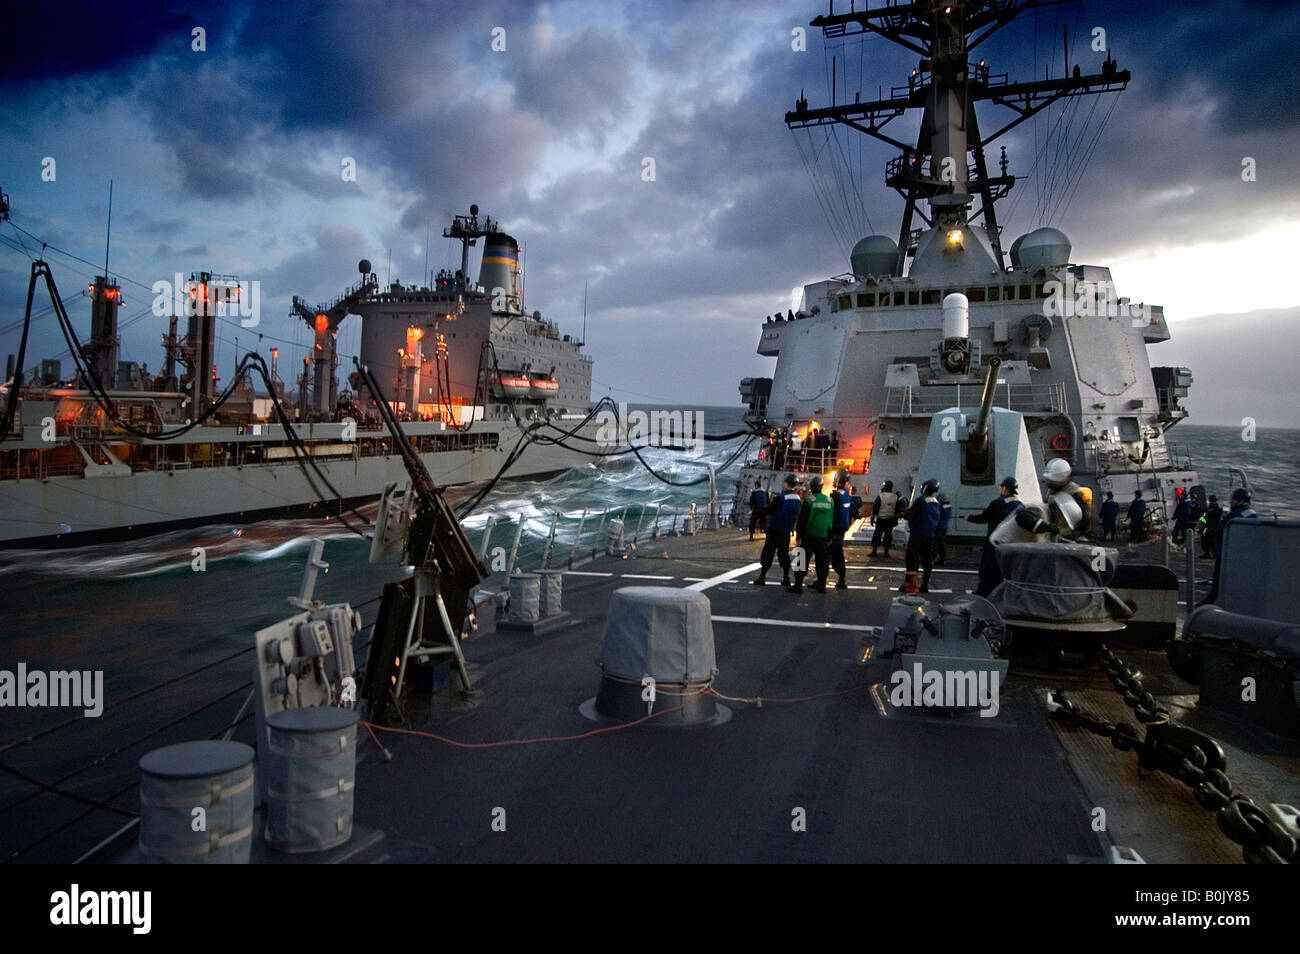 Il rifornimento di carburante in mare USS Roosevelt prende sul carburante dall'oliatore USNS Patuxent Foto Stock